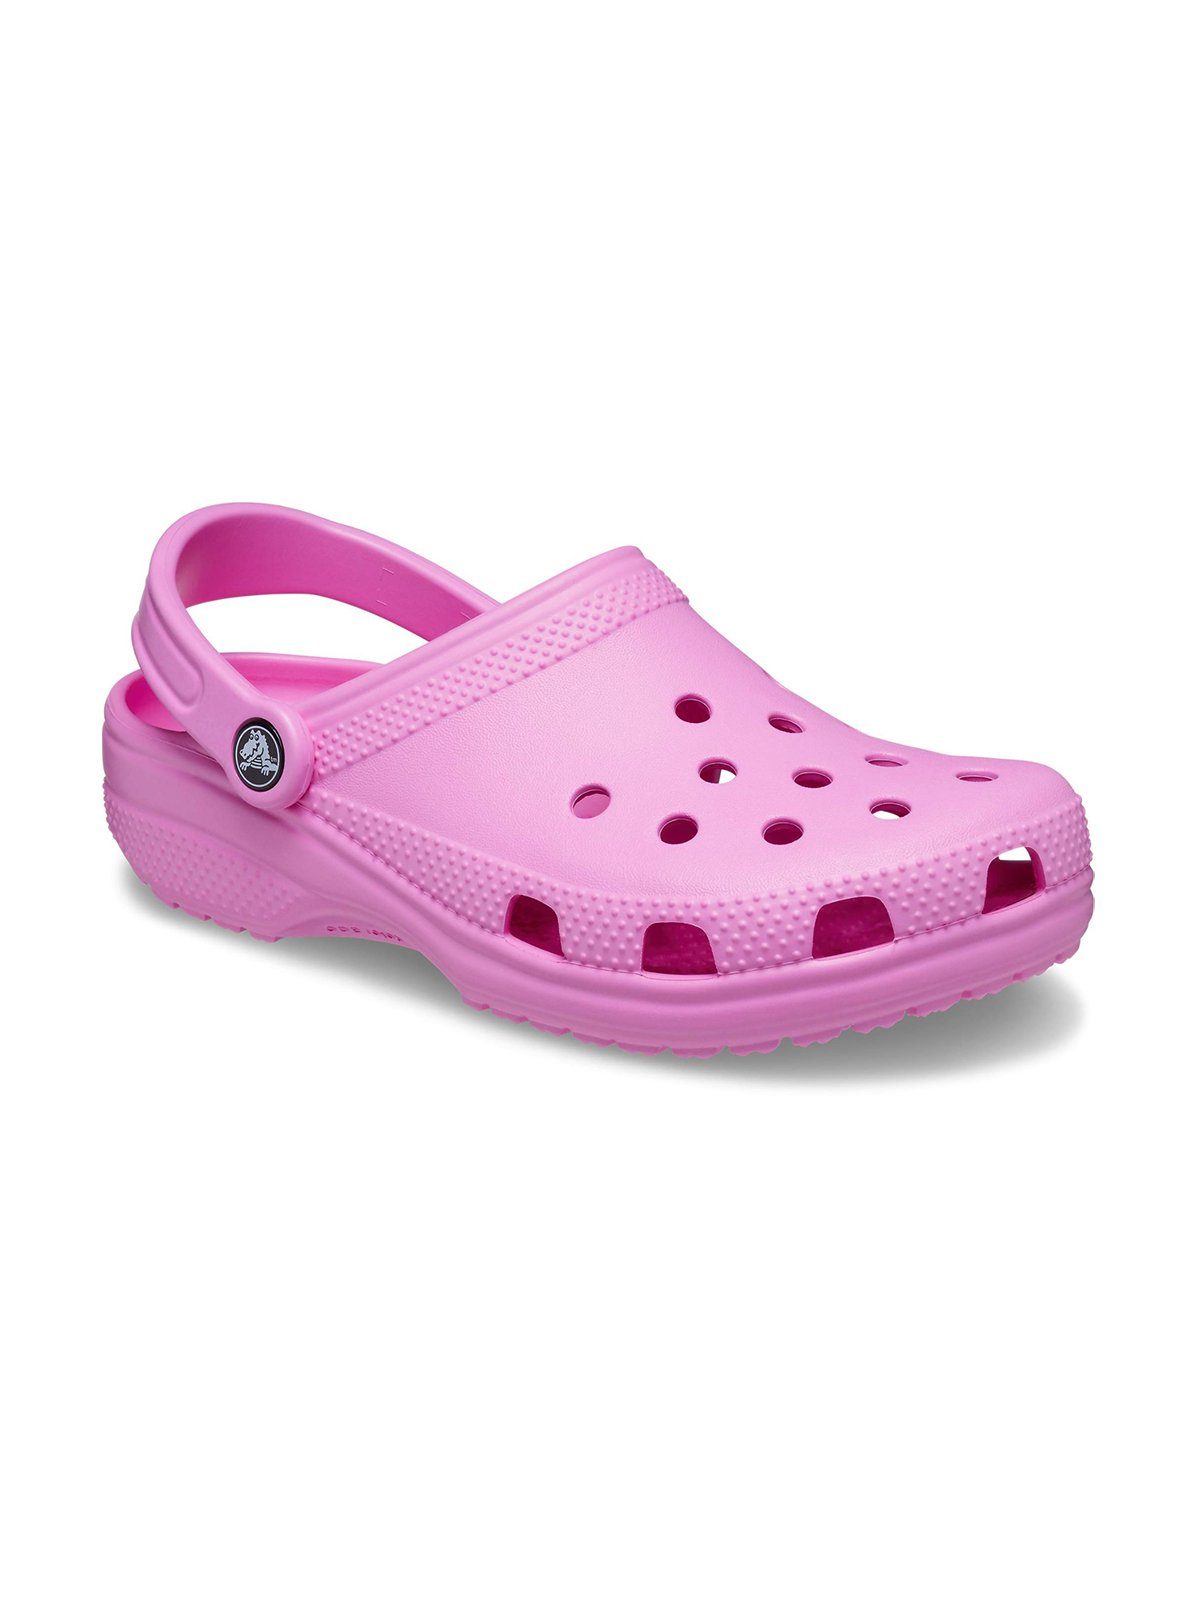 Crocs Crocs Classic Clog Clog taffy pink